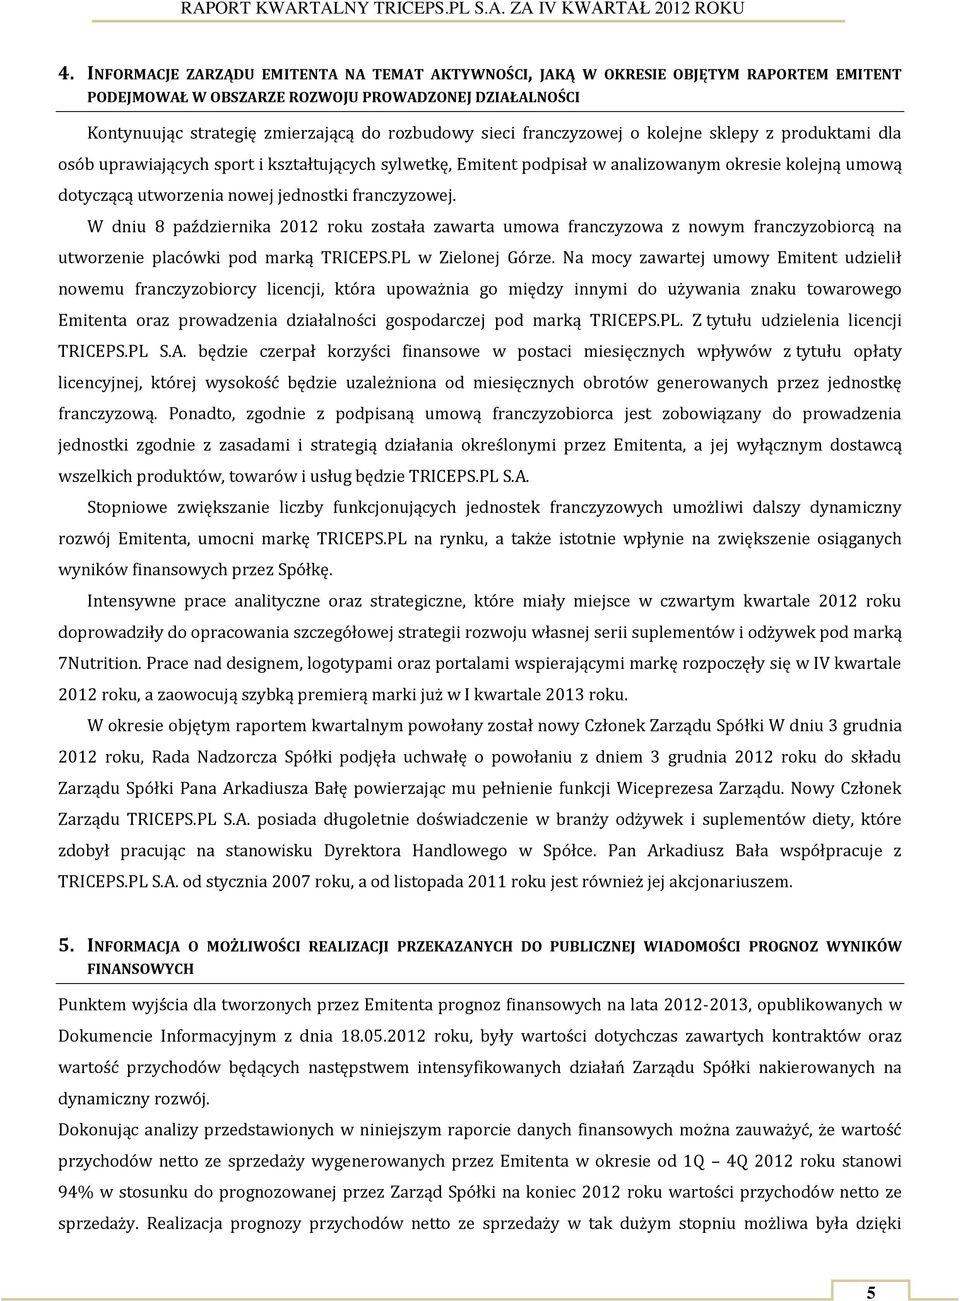 franczyzowej. W dniu 8 października 2012 roku została zawarta umowa franczyzowa z nowym franczyzobiorcą na utworzenie placówki pod marką TRICEPS.PL w Zielonej Górze.